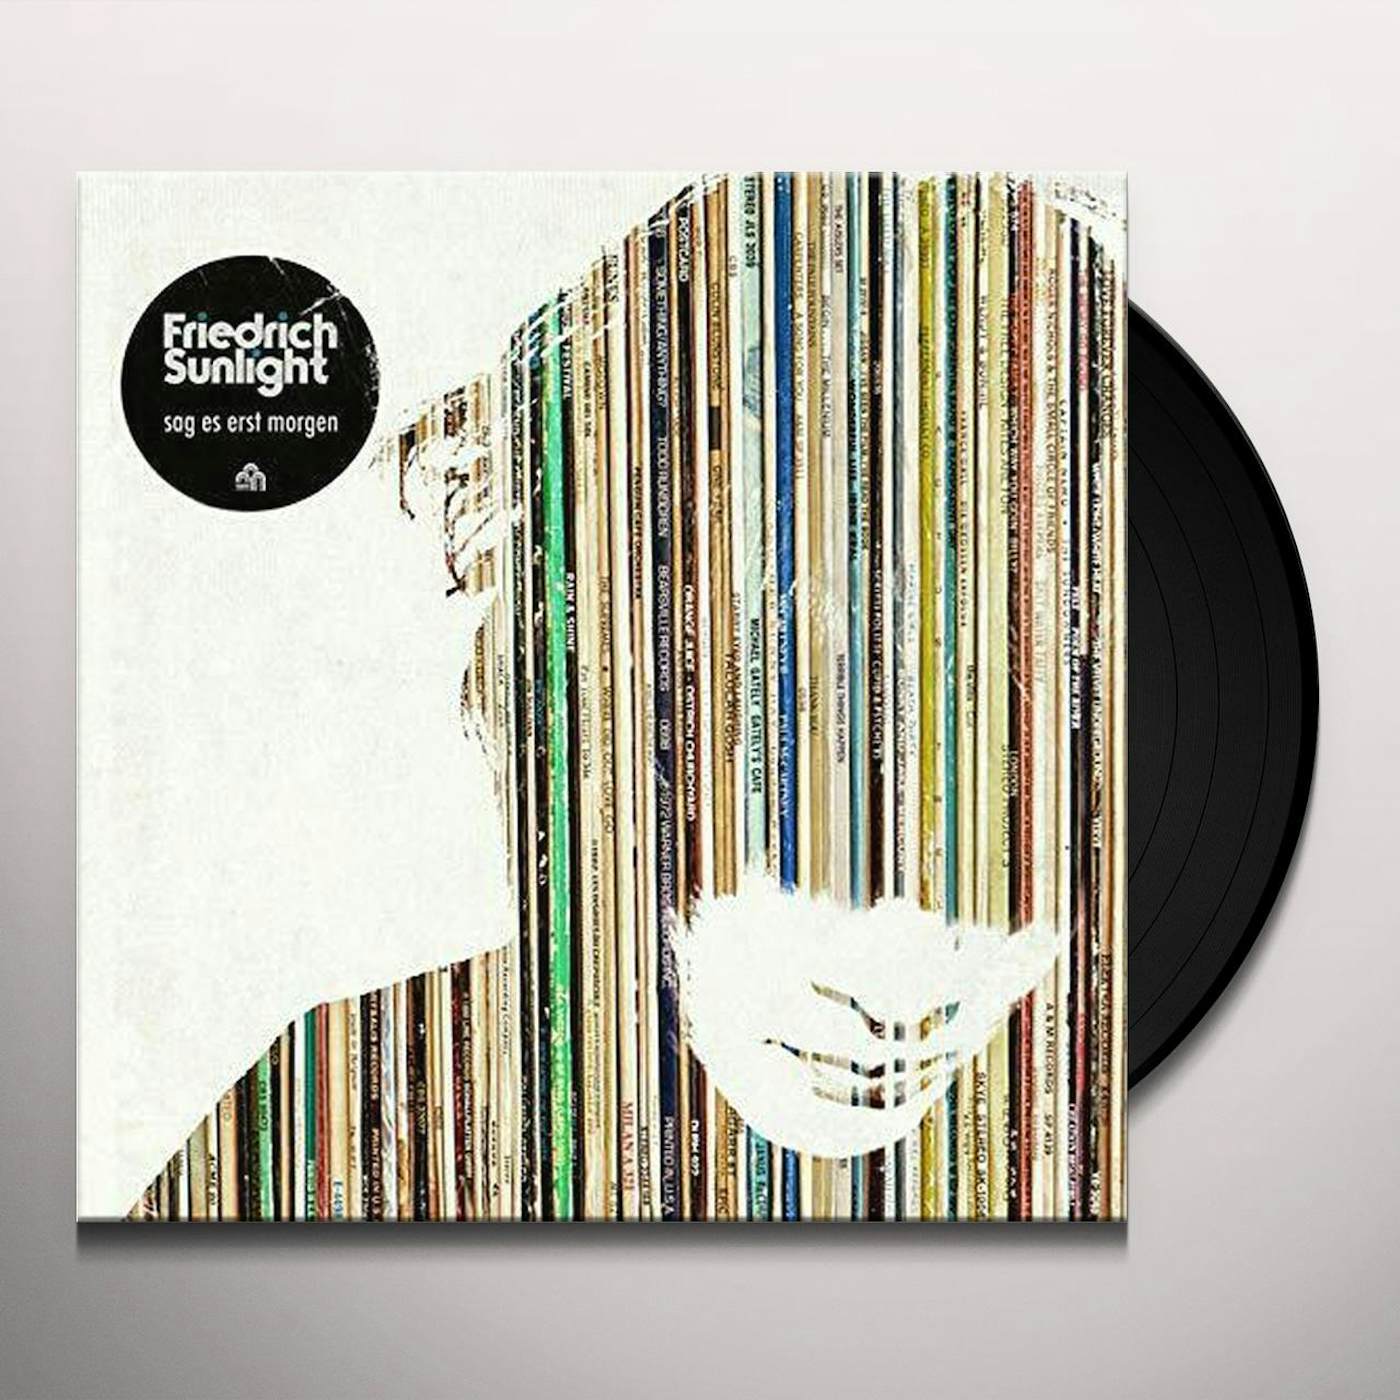 Friedrich Sunlight Sag Es Erst Morgen Vinyl Record